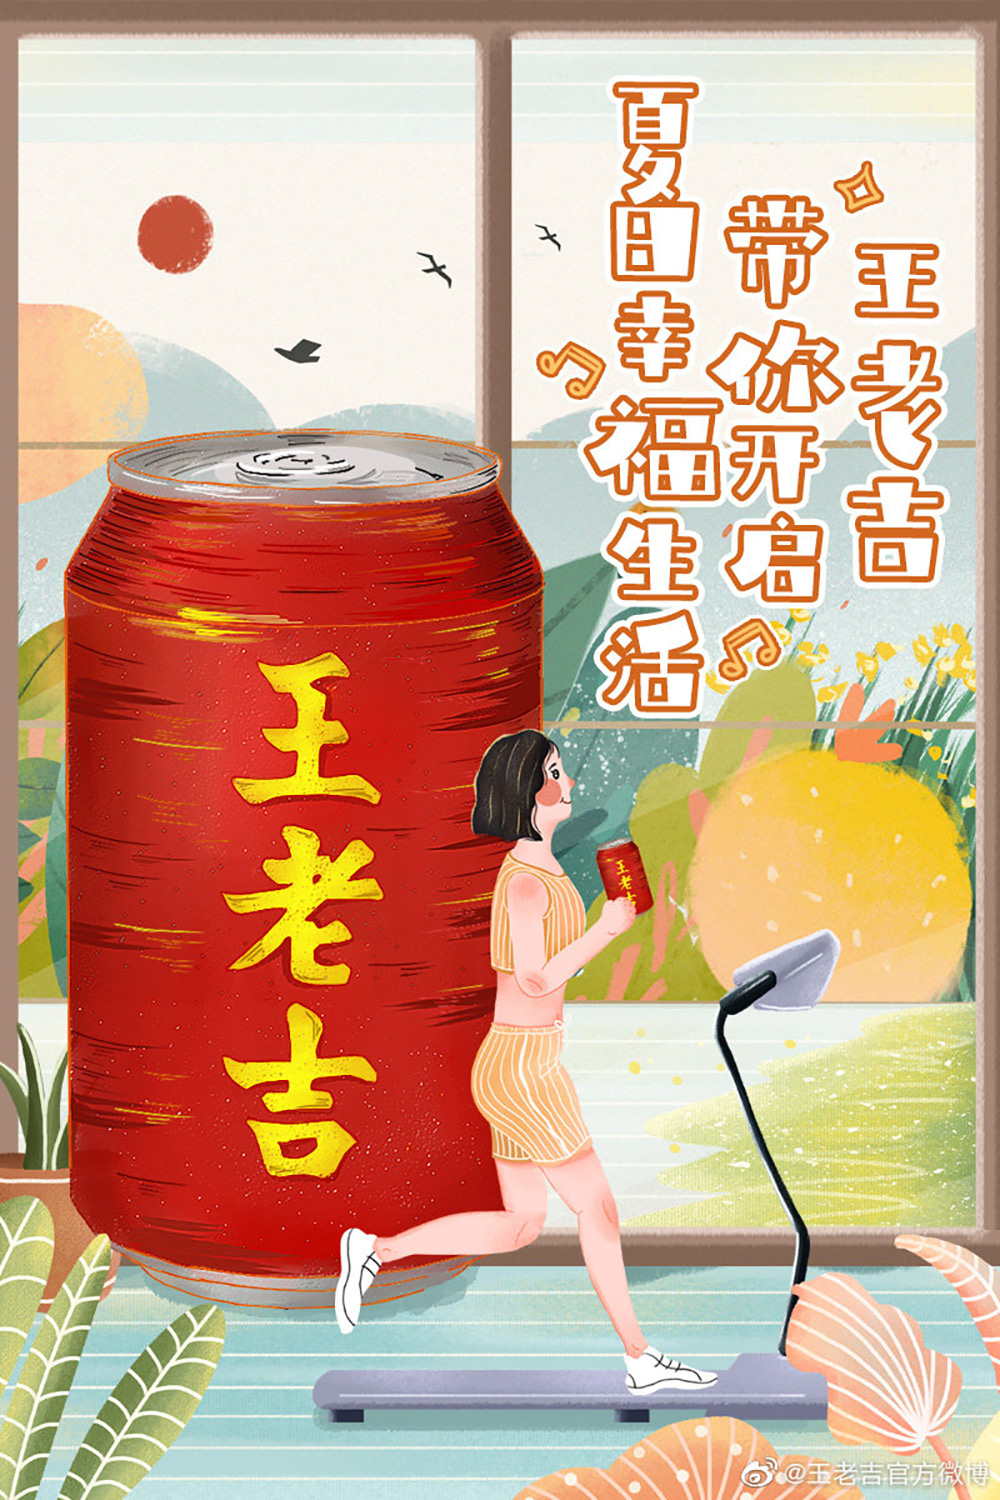 12张王老吉的宣传海报设计